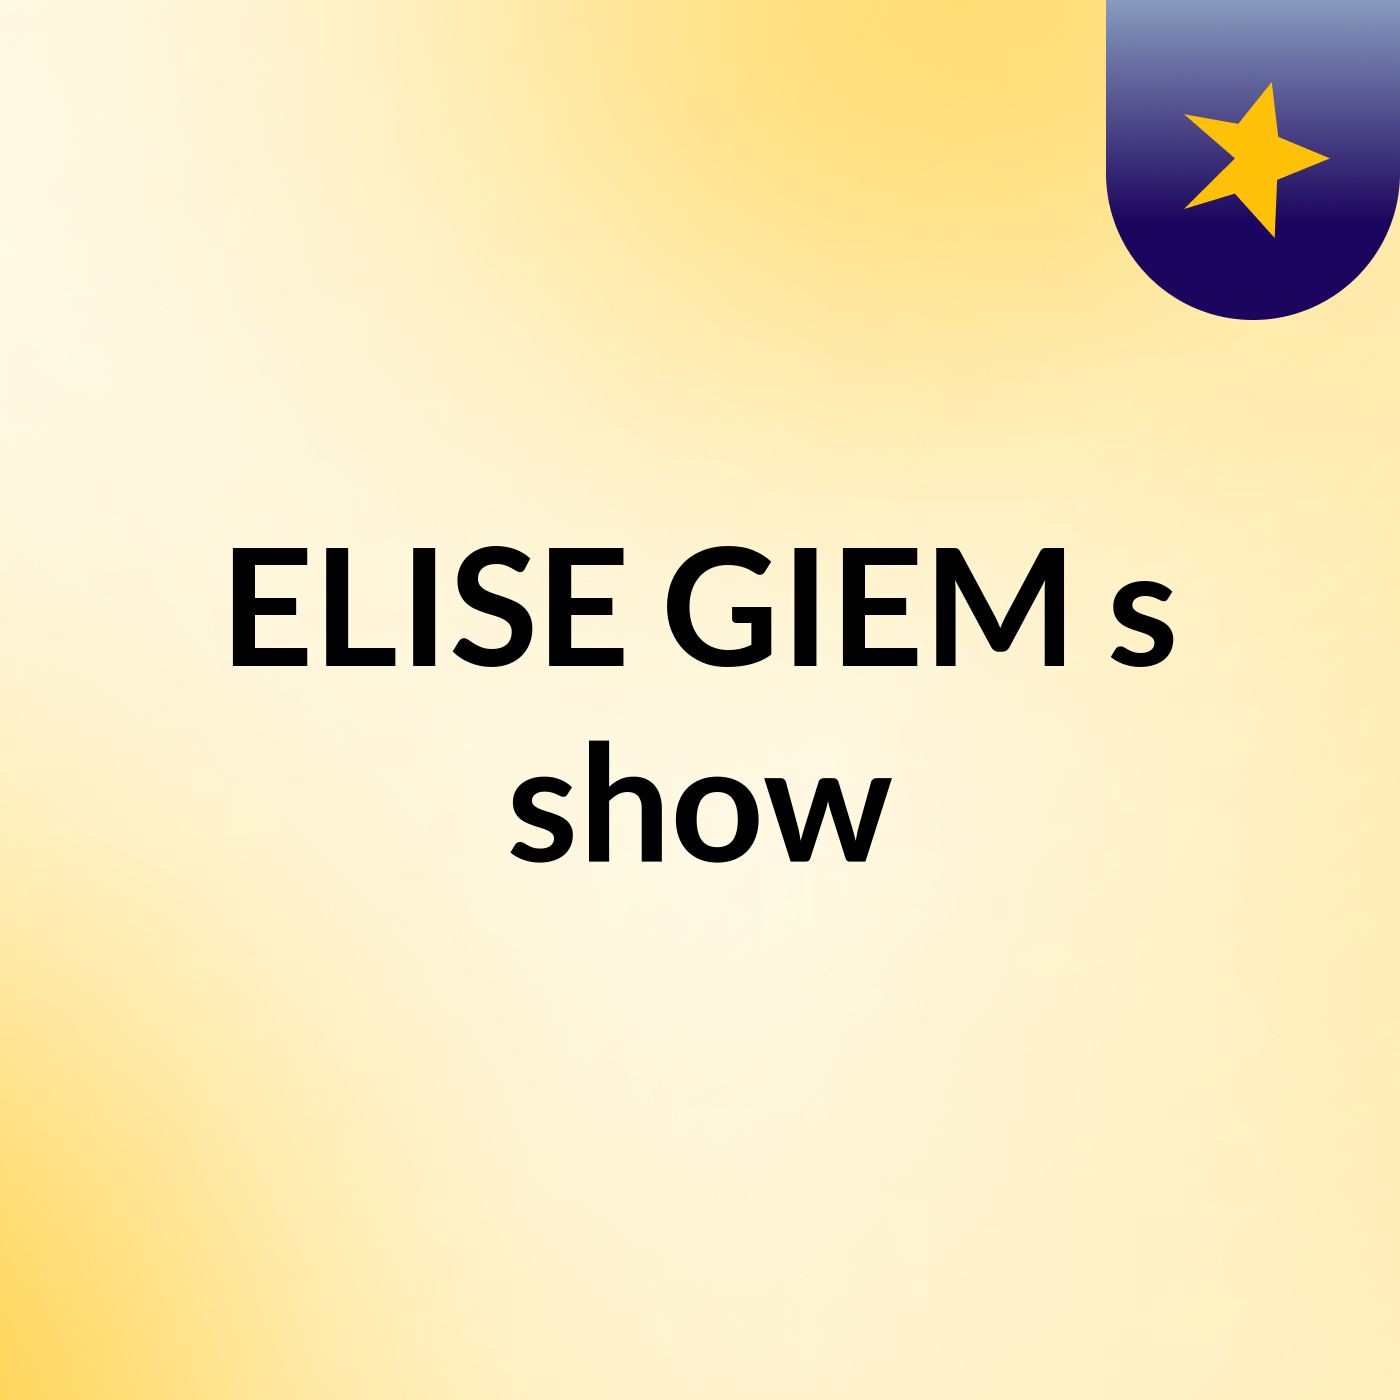 Episode 3 - ELISE GIEM's show